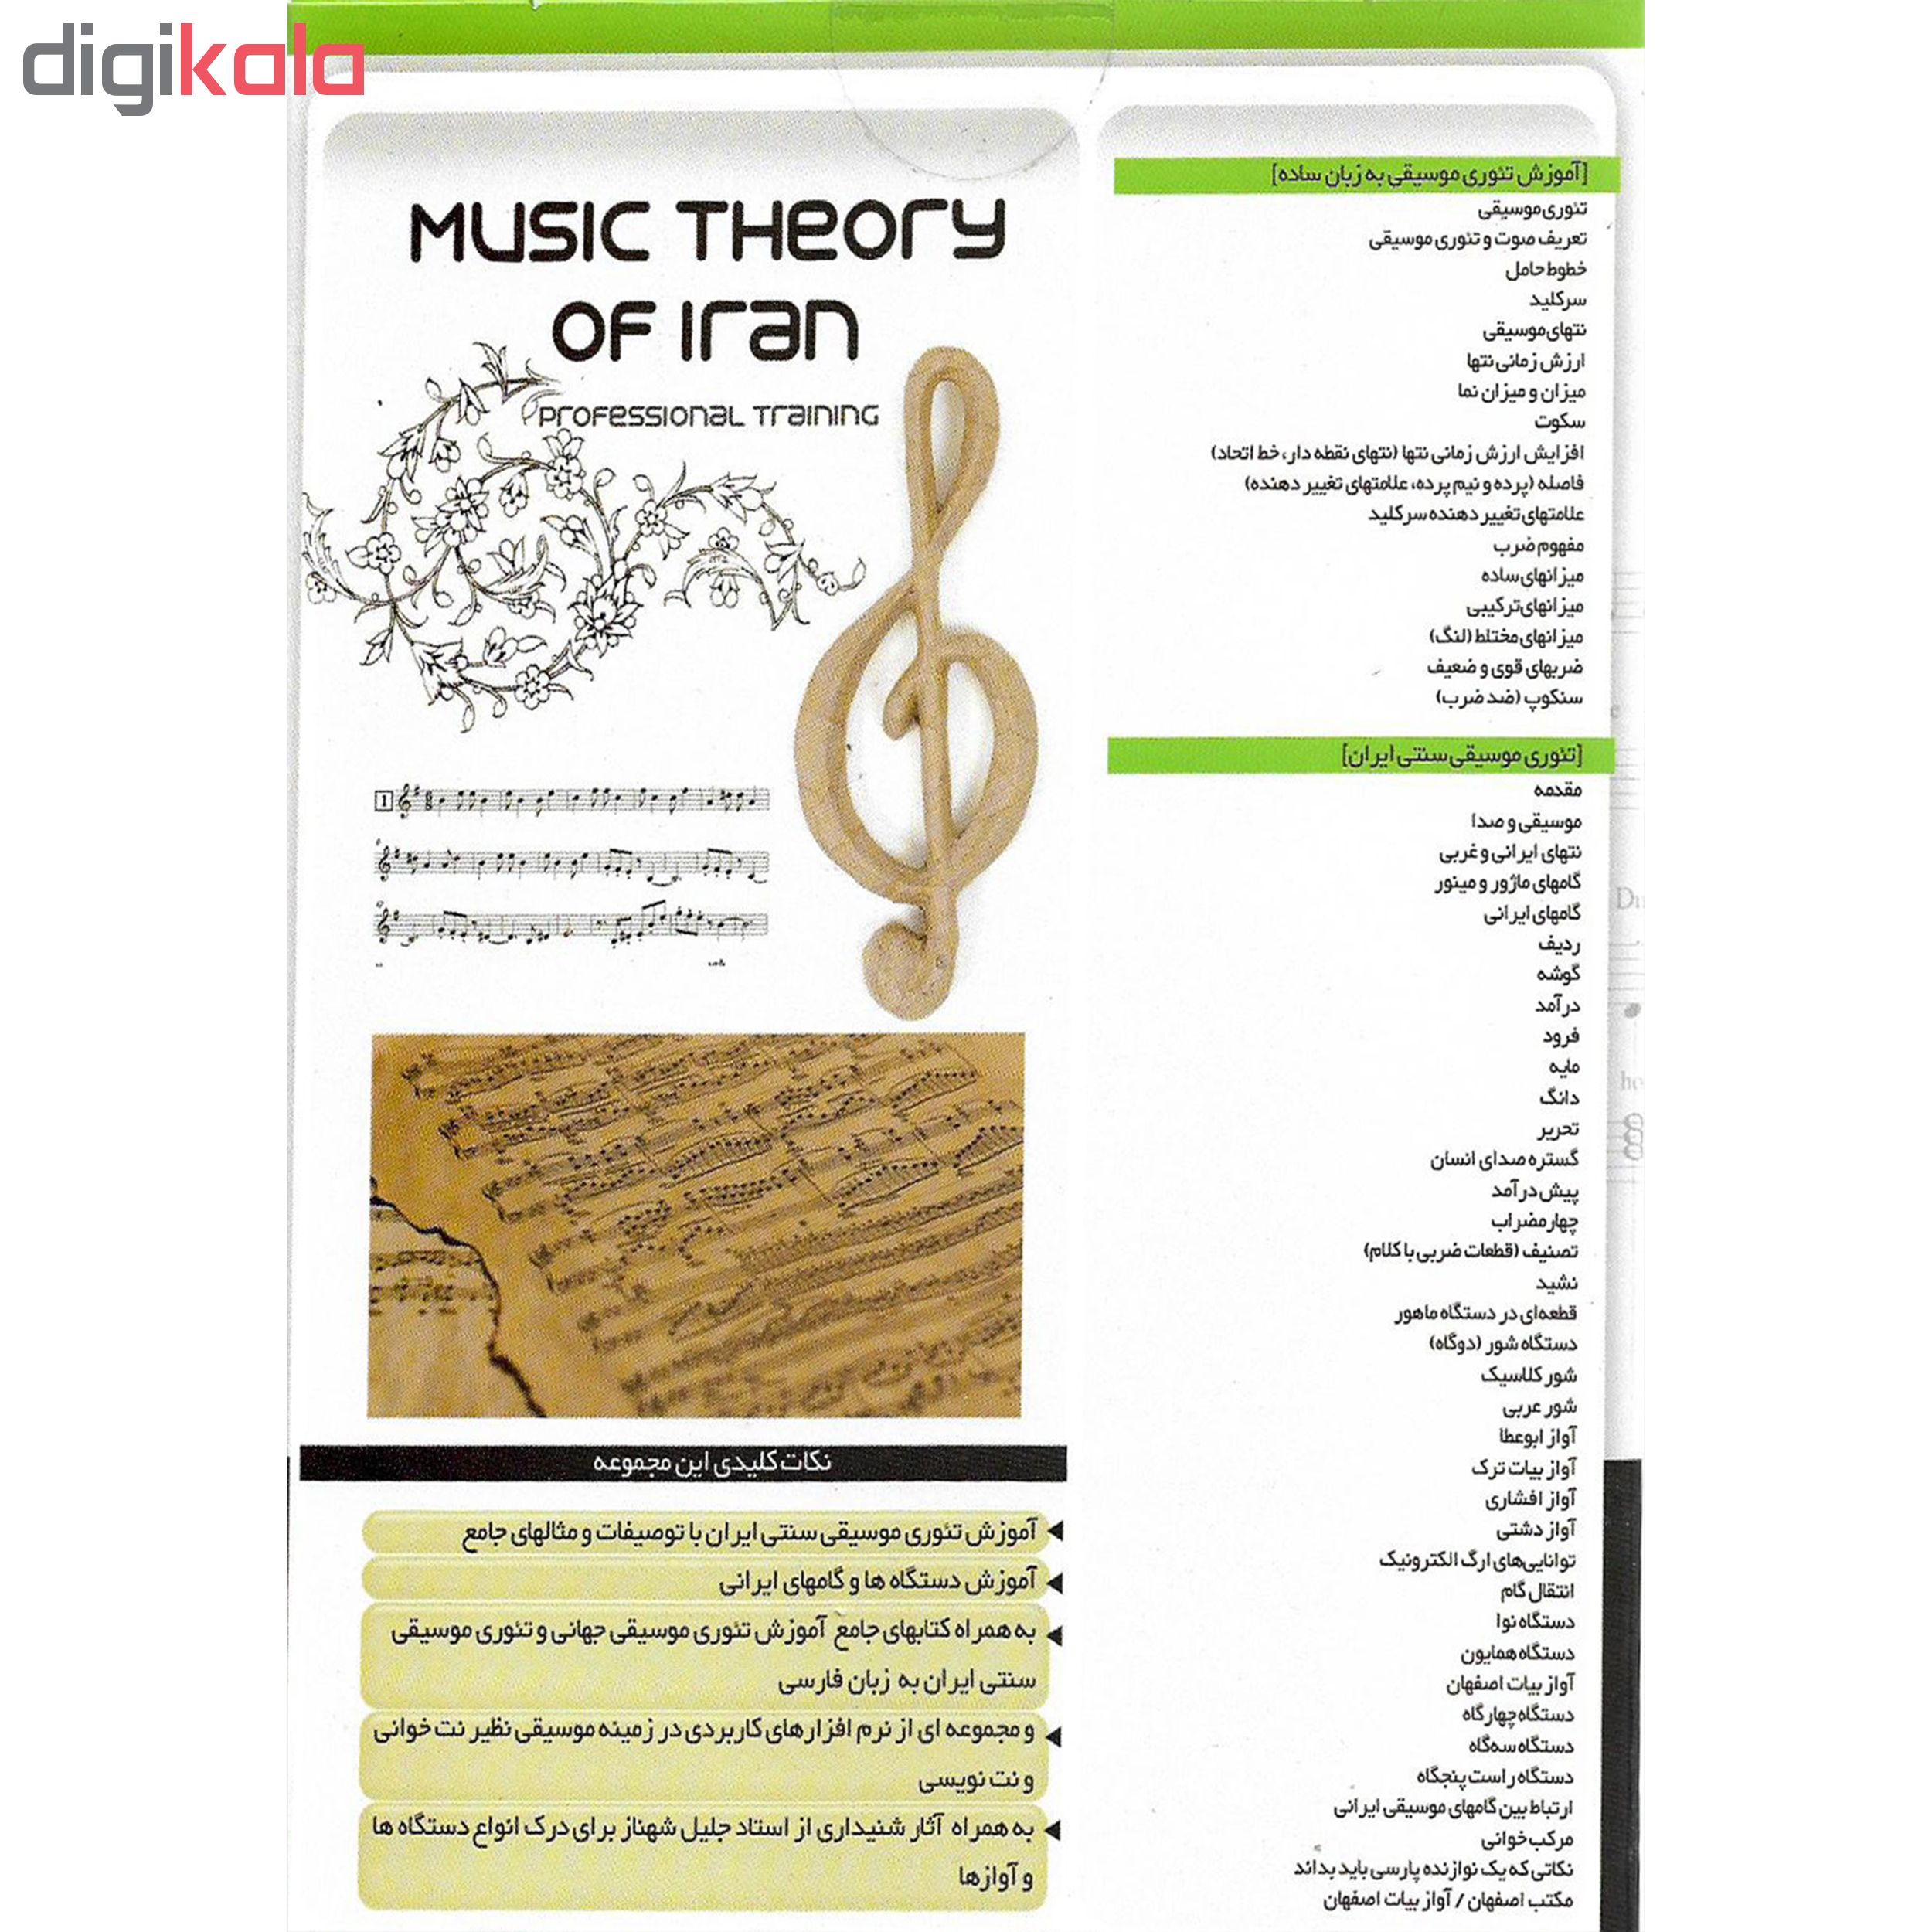 نرم افزار آموزش تار نشر درنا به همراه نرم افزار آموزش تئوری موسیقی ایرانی نشر درنا